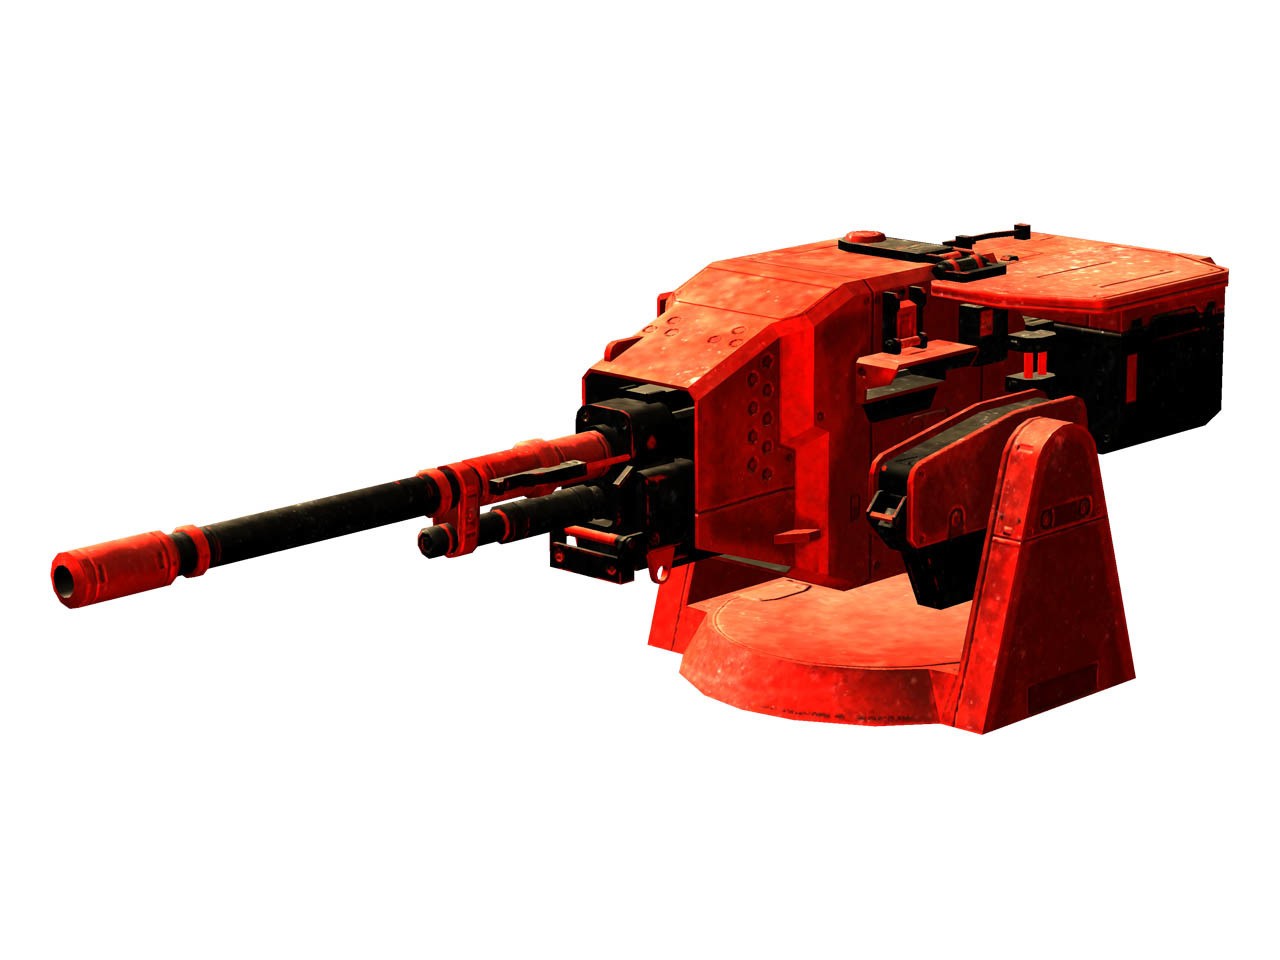 以狗狗為主角的動作遊戲《坦克戰狗》決定於 4 月 8 日發售並公開最新情報